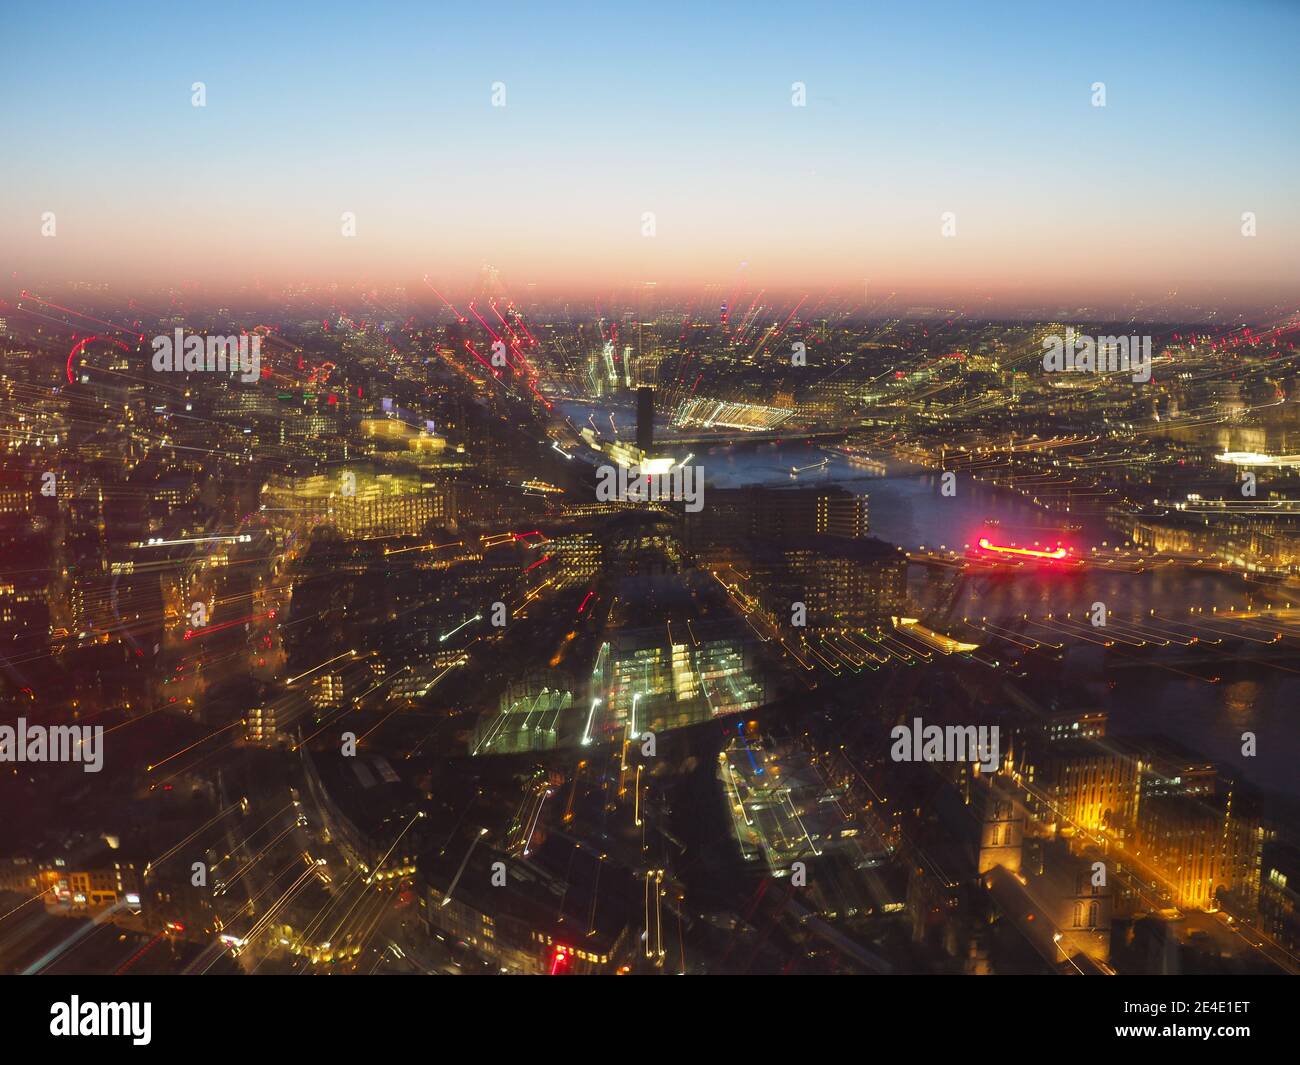 Halb-abstraktes Stadtbild bei Nacht mit Zoom-Burst-Effekt Stockfoto